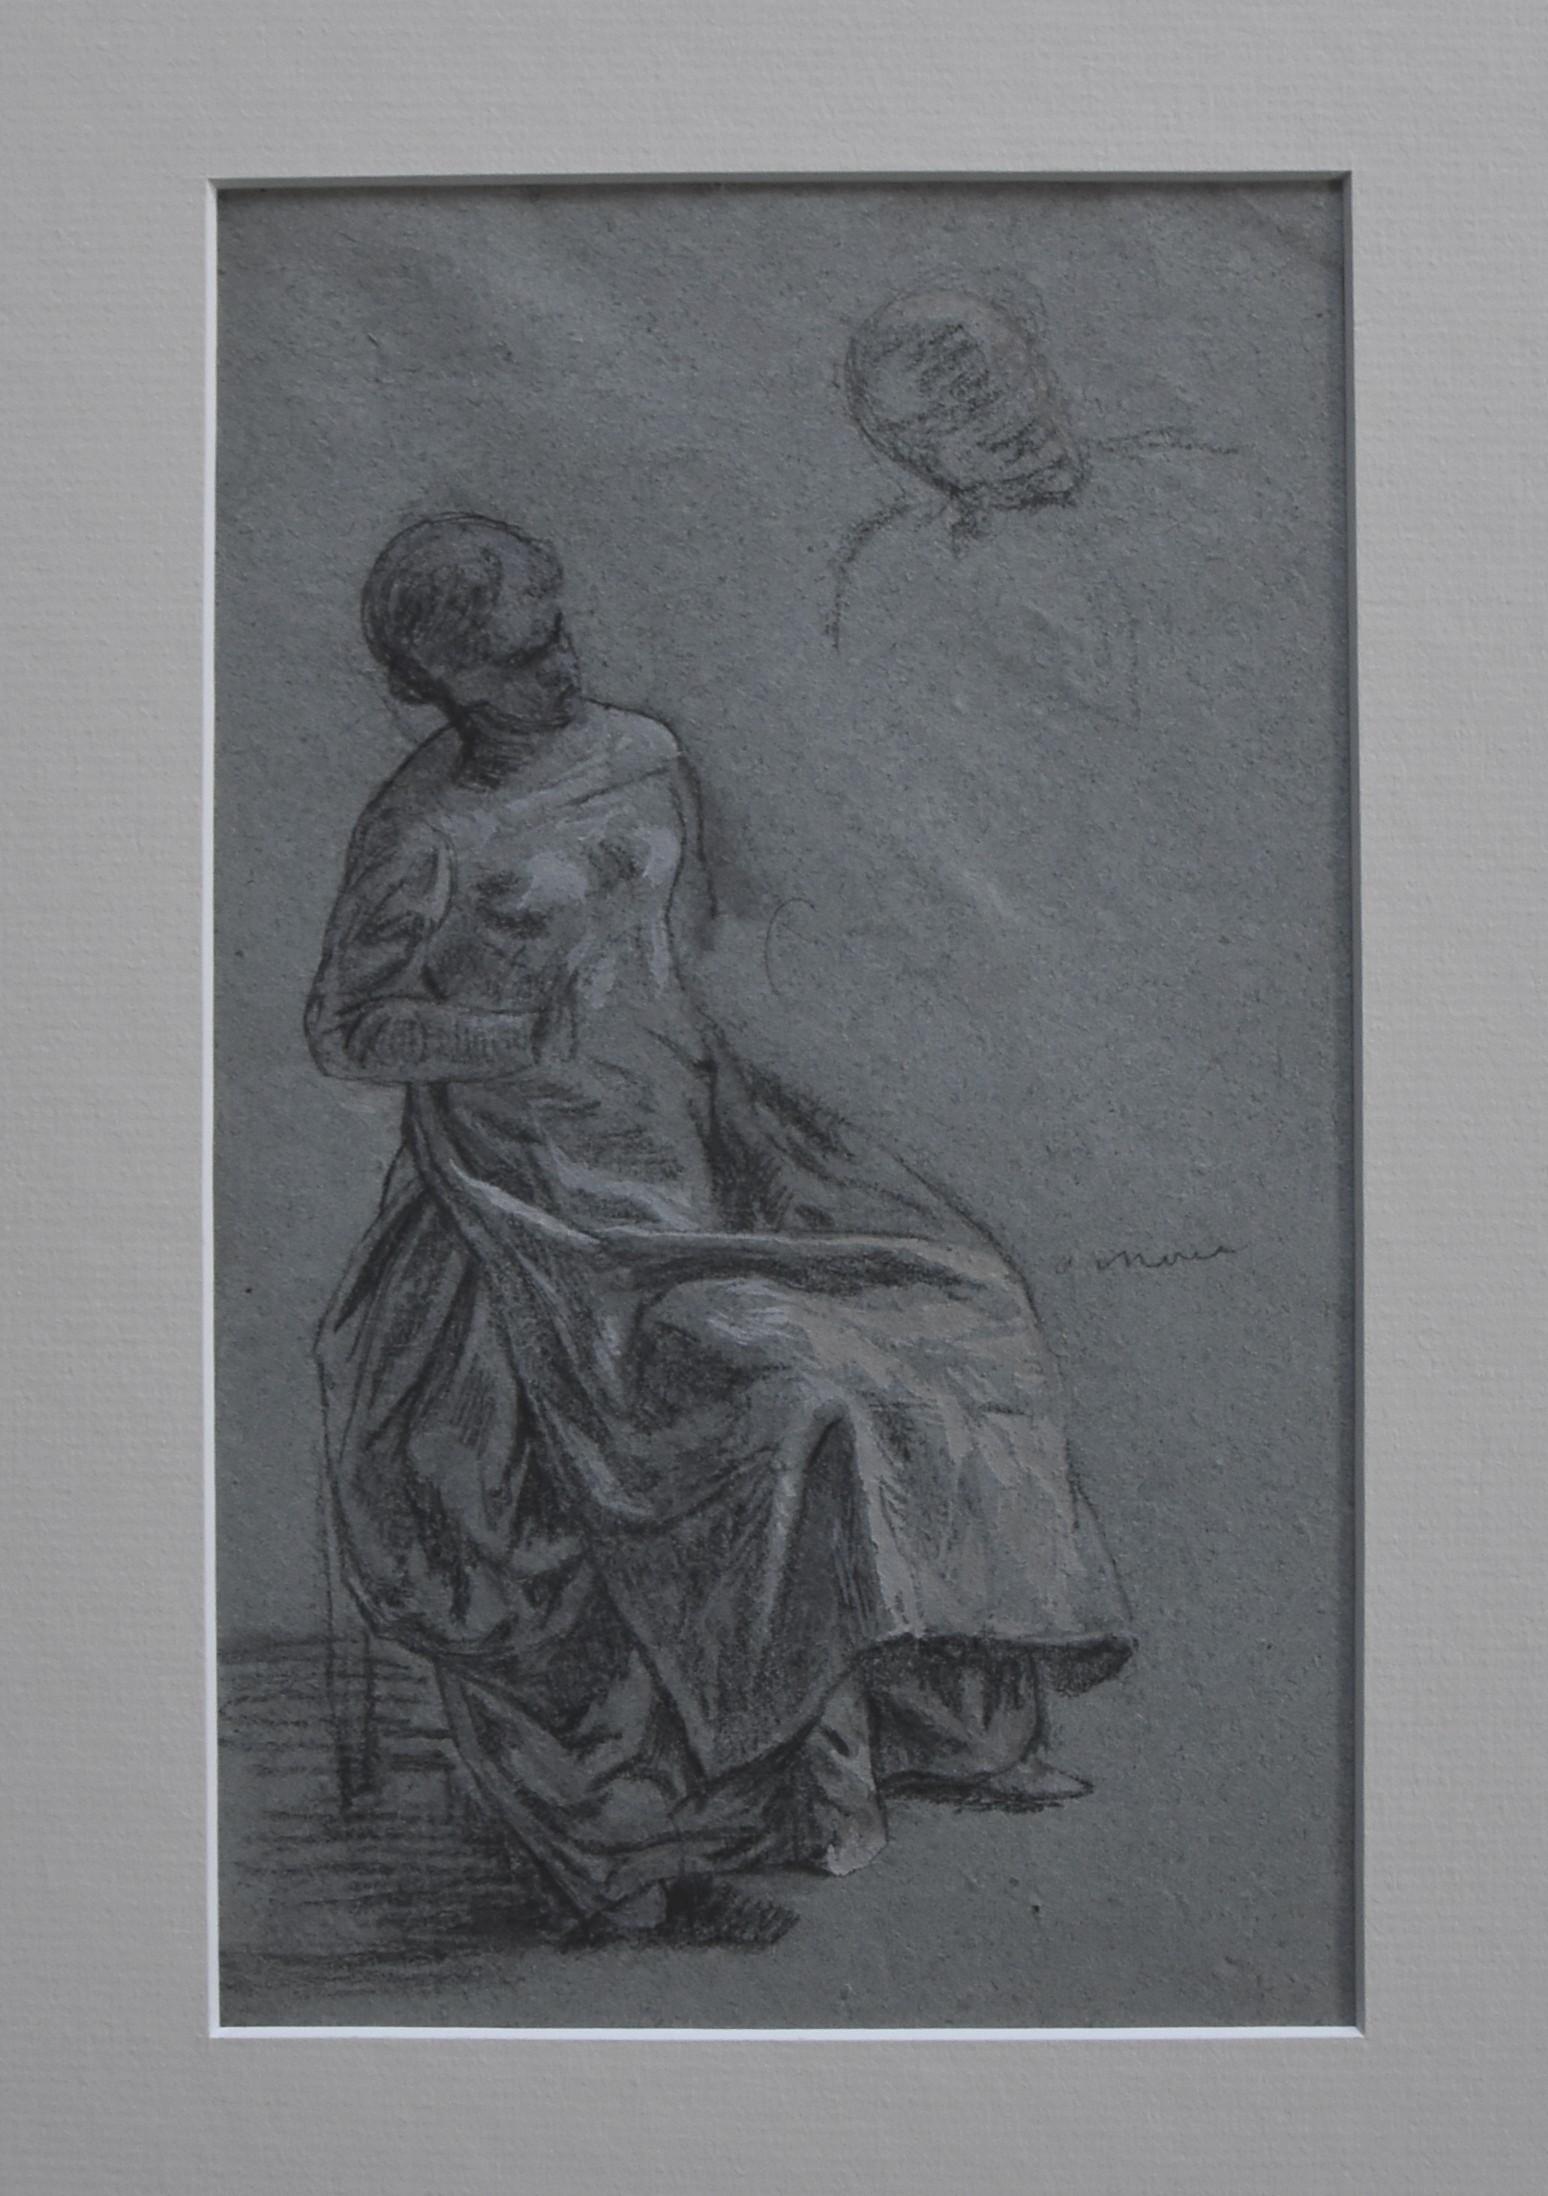 Zuschreibung an Eugene Deully (1866-1933) 
Eine sitzende Frau, Studie, 
Bleistift und weiße Gouache auf blaugrauem Papier;
23 x 14,5 cm
Gerahmt (Schäden am Rahmen)  : 41.5 x 32,5 cm

Die Zuschreibung an Eugene Deully ist auf der Rückseite des